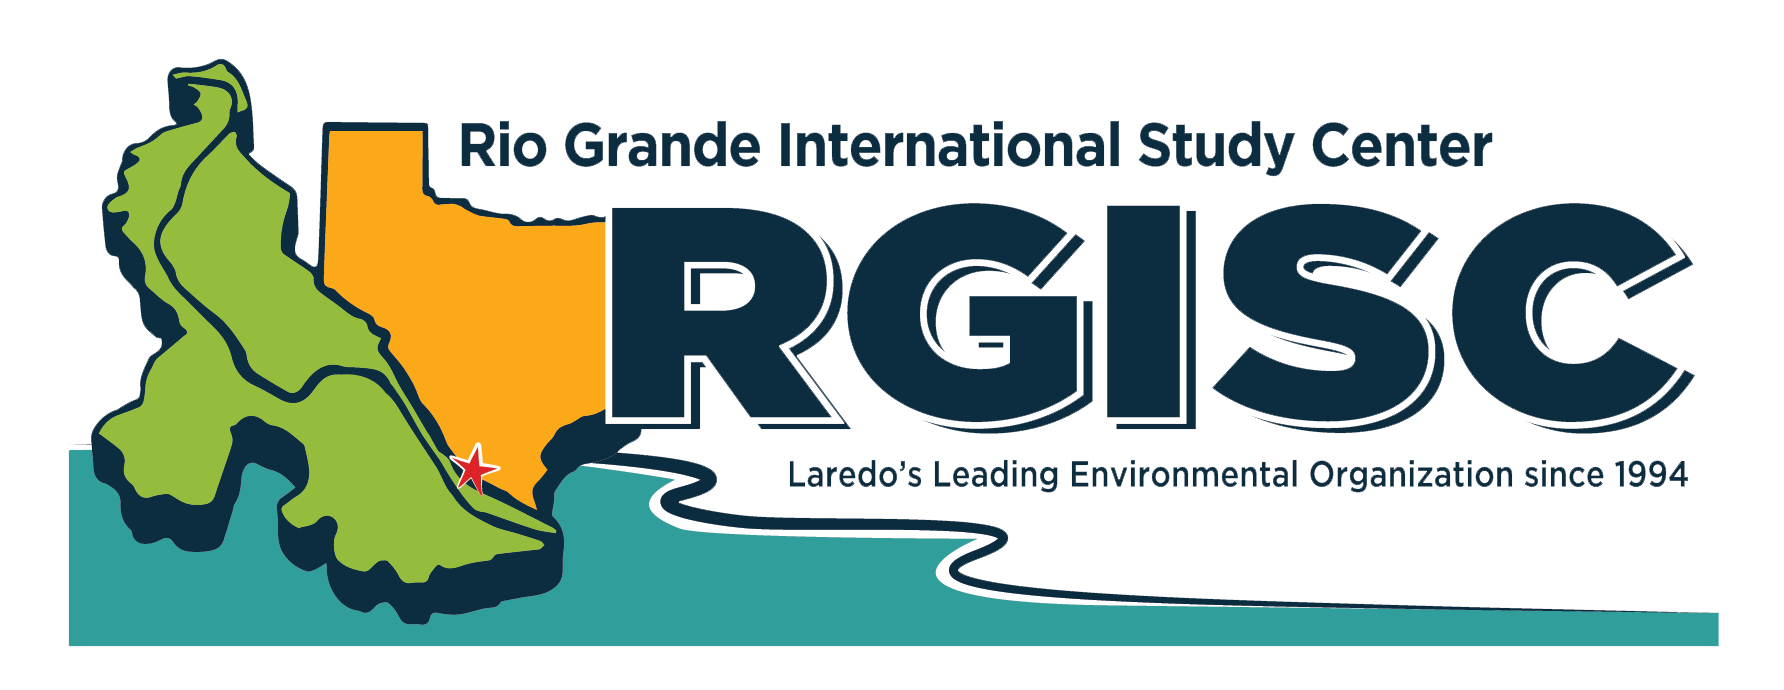 Rio Grande International Study Center Logo